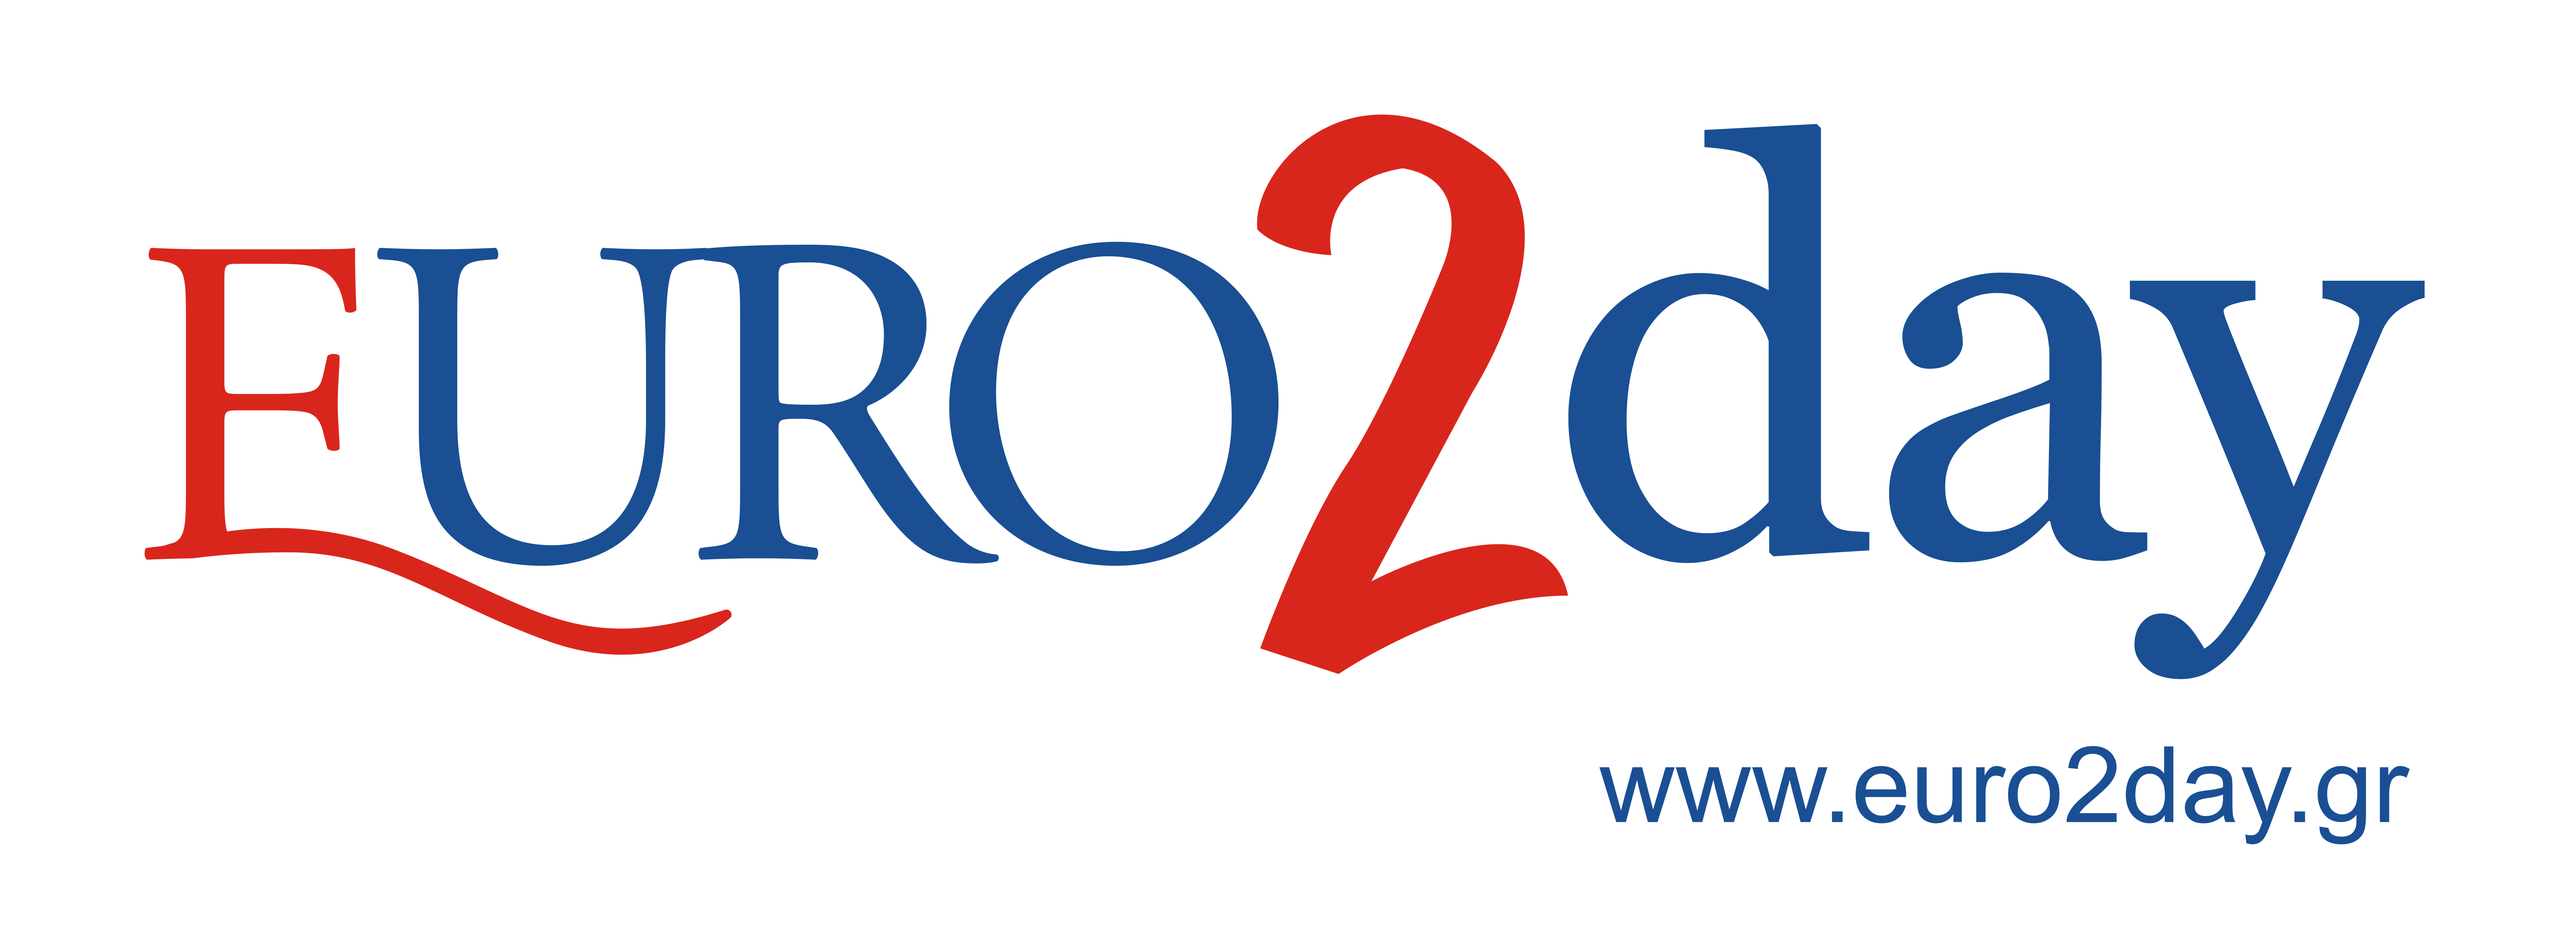 euro2day_logo logo